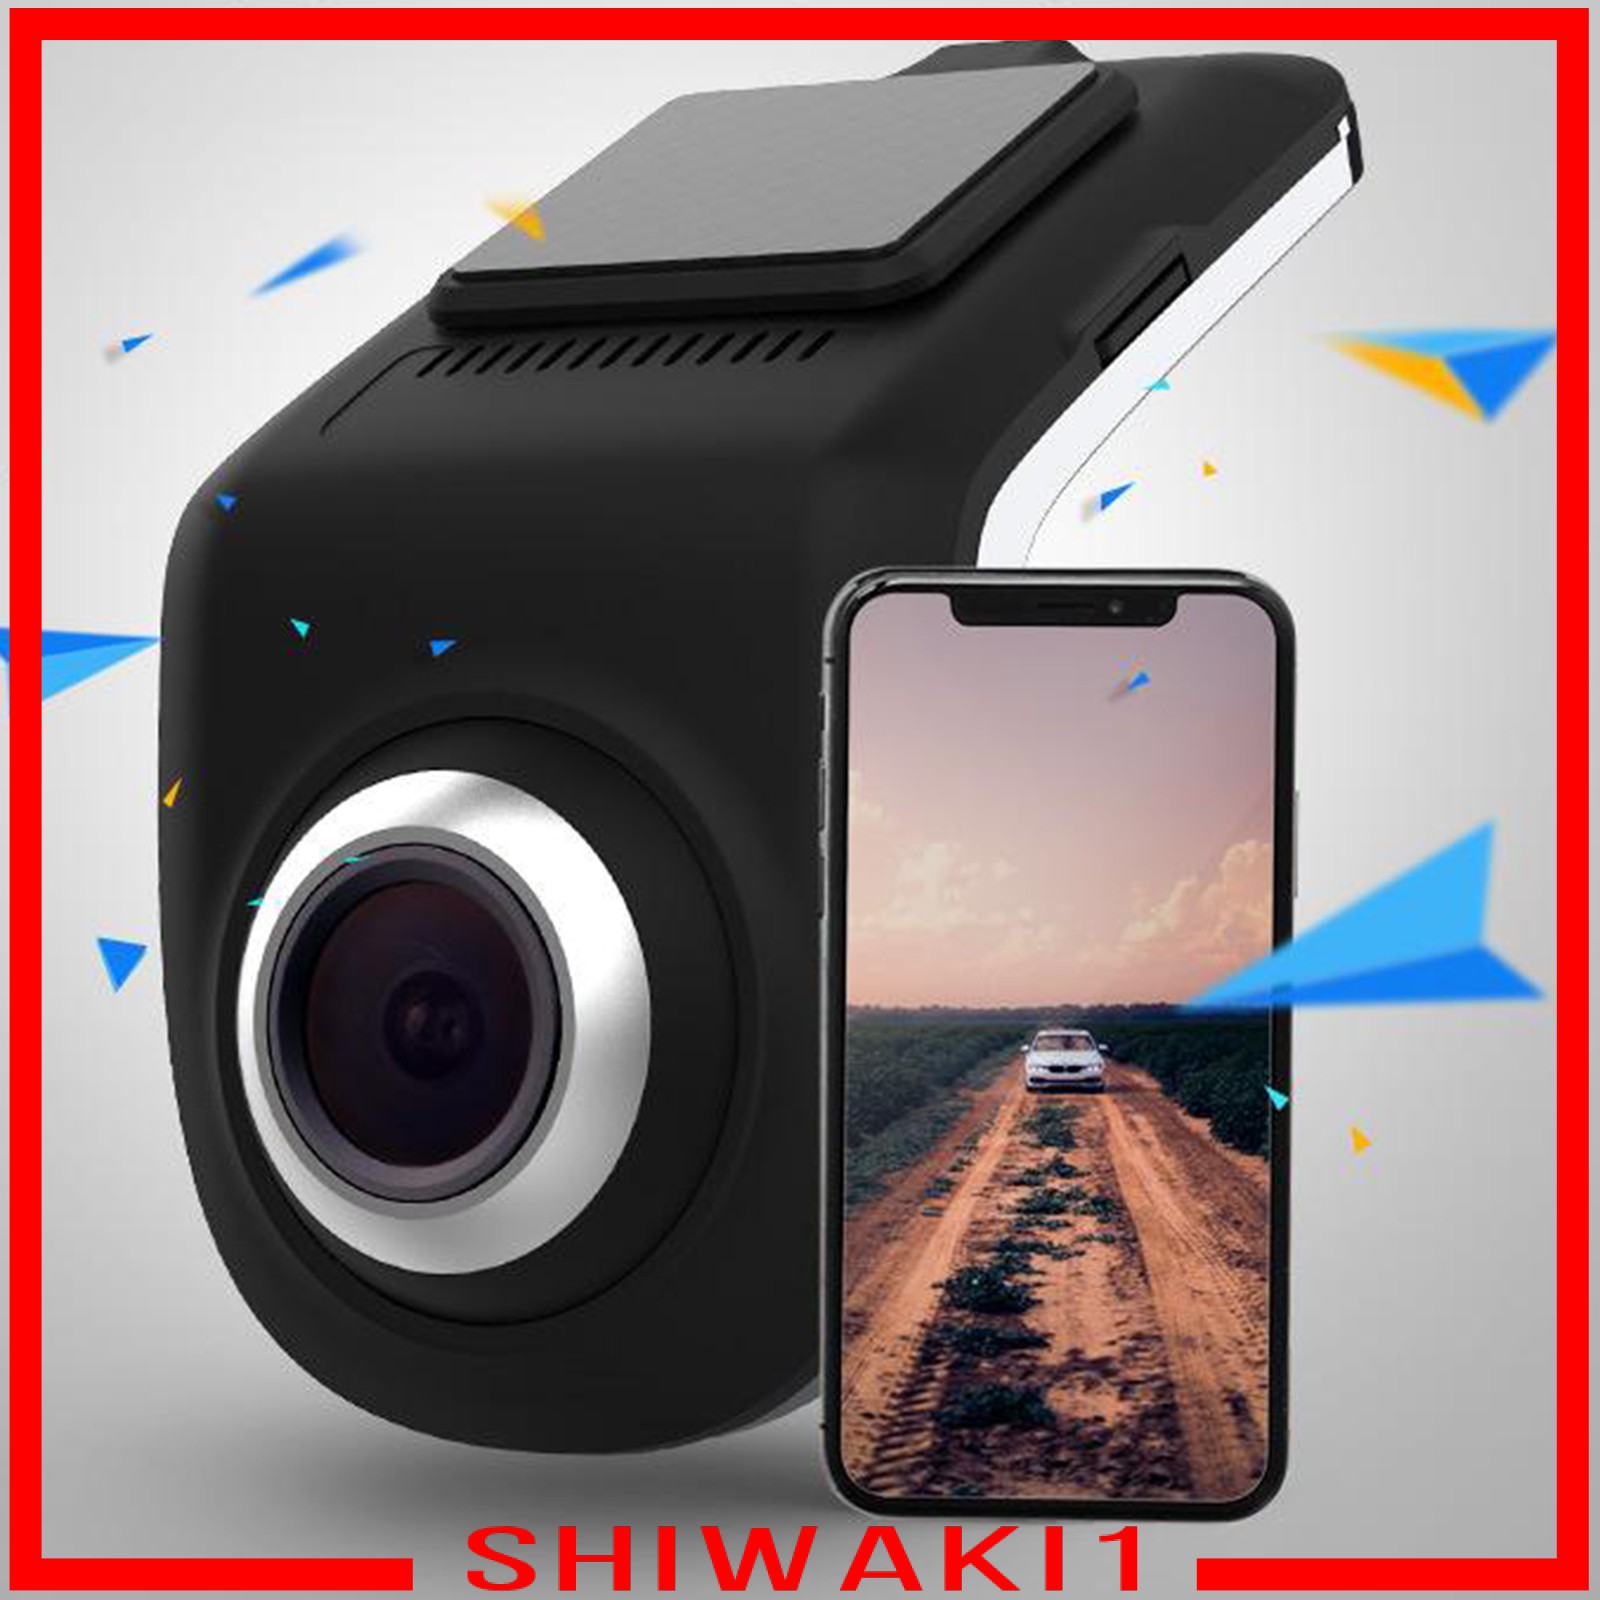 Camera Hành Trình Cho Xe Hơi Shiwaki1) U9 Full Hd Wifi 720p Max 32gb Tf